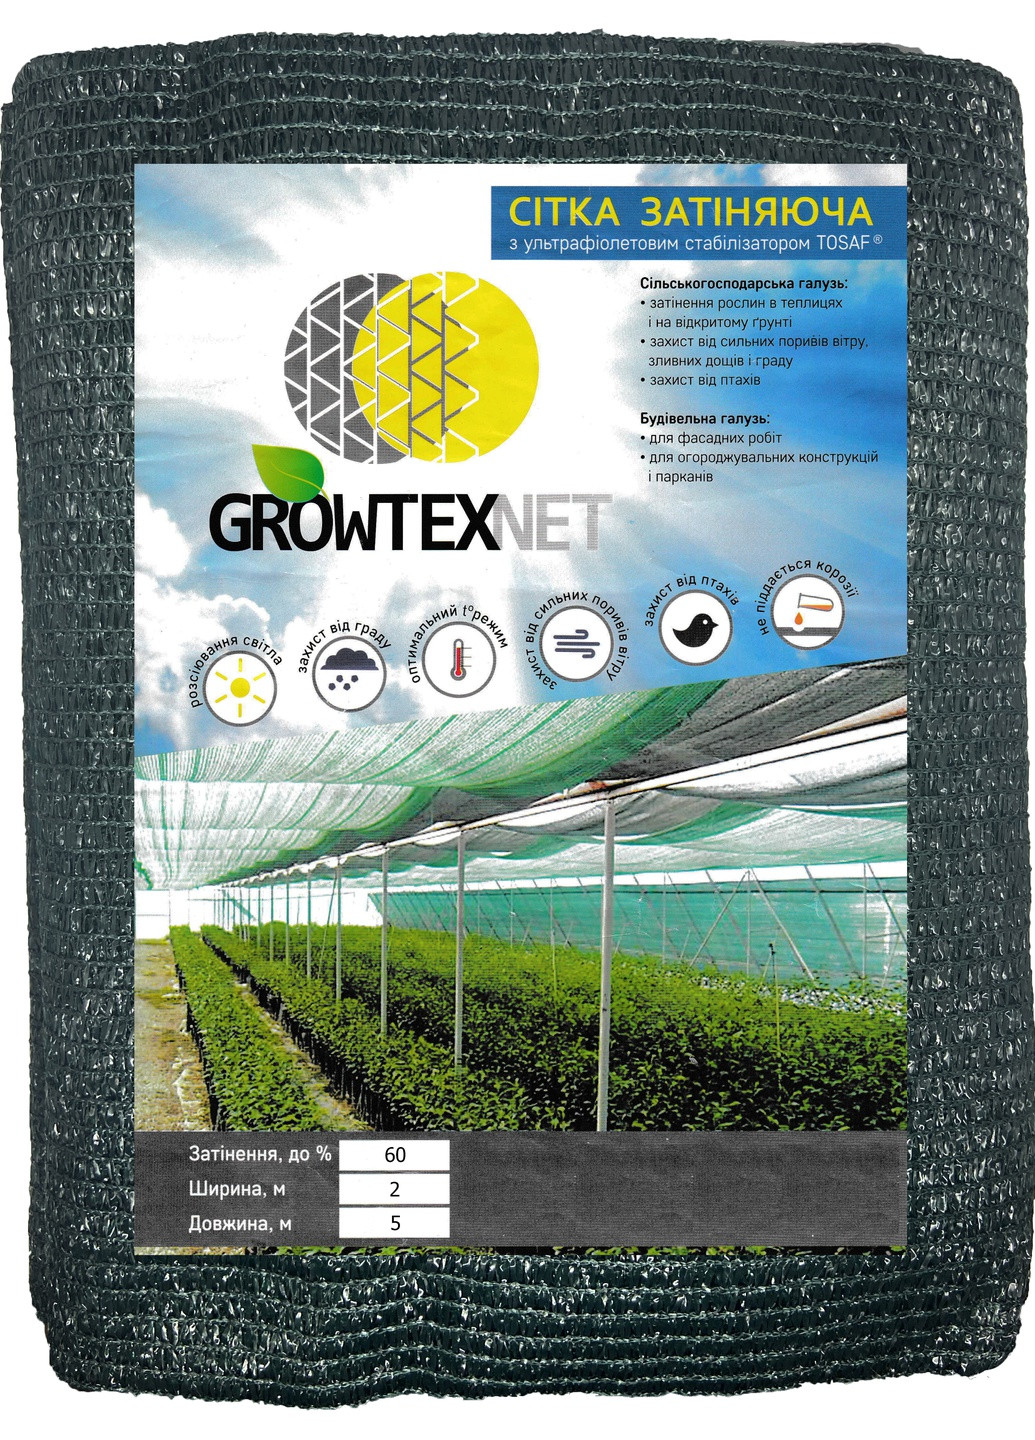 Сітка затіняюча Growtex Net з ультрафіолетовим стабілізатором 60% (55 гр/м2) розмір 2х5 м Одетекс (258457575)